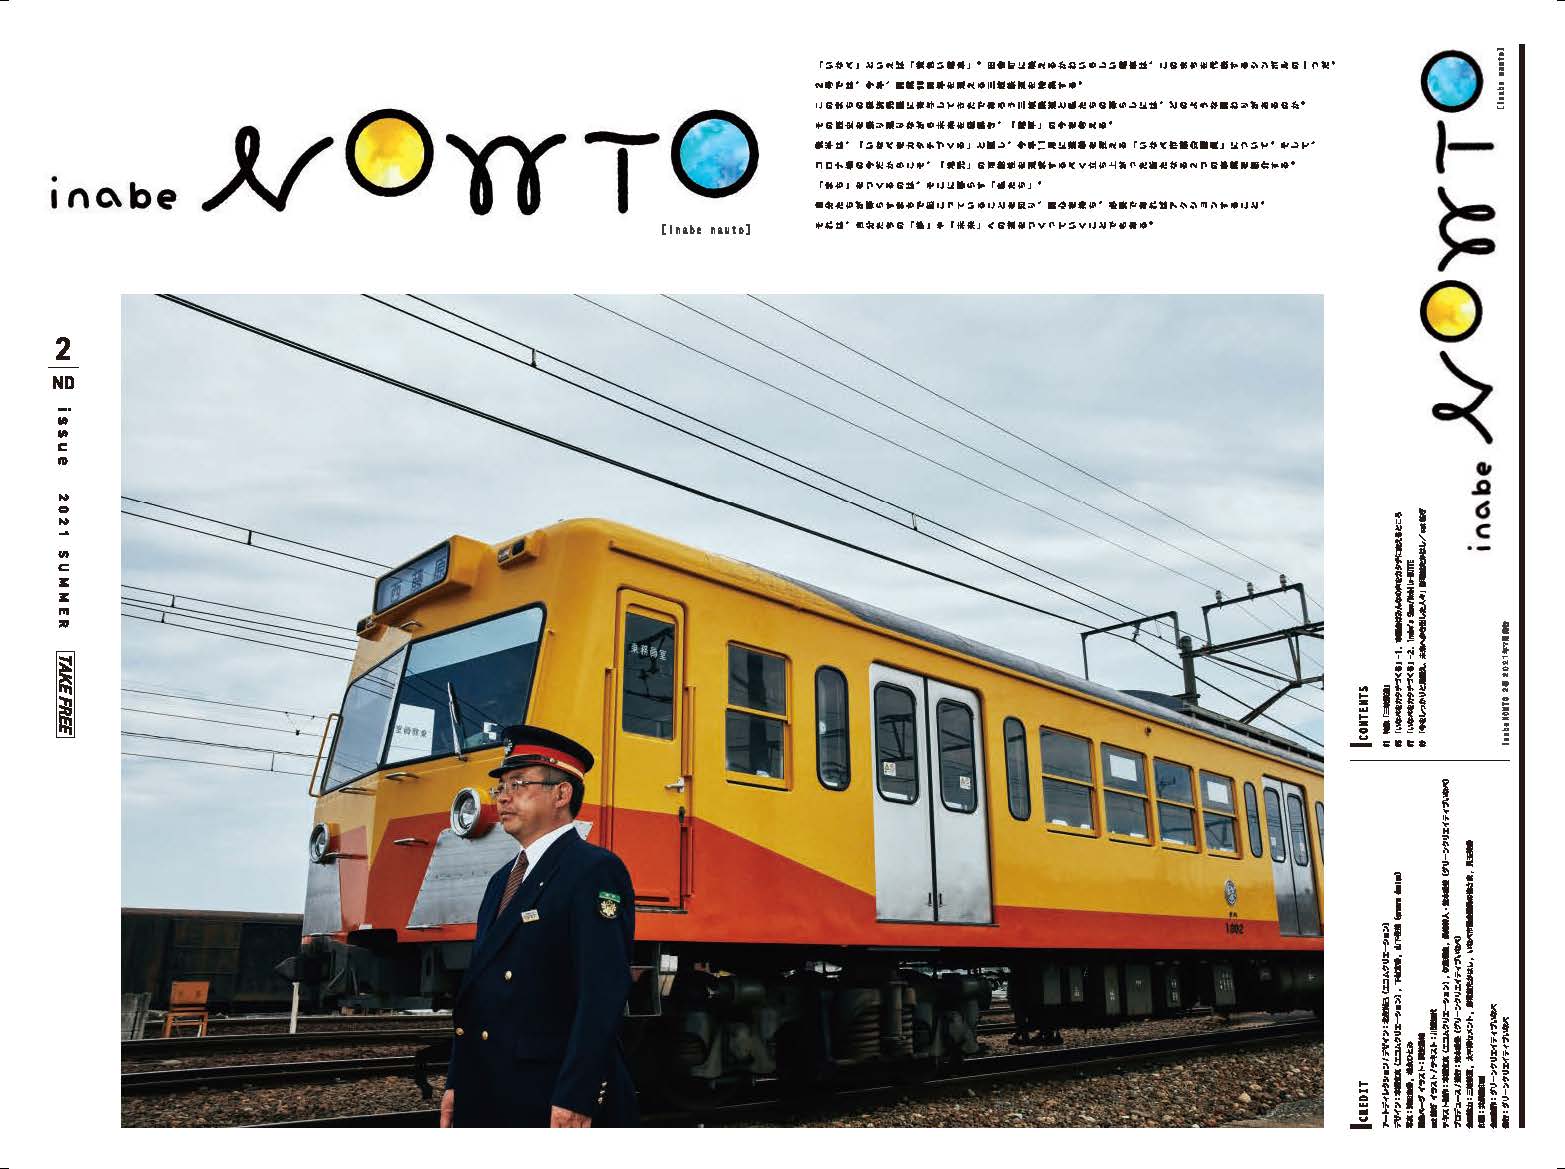 Inabe Nowto2号を発行しました 三岐鉄道他 グリーンクリエイティブいなべ